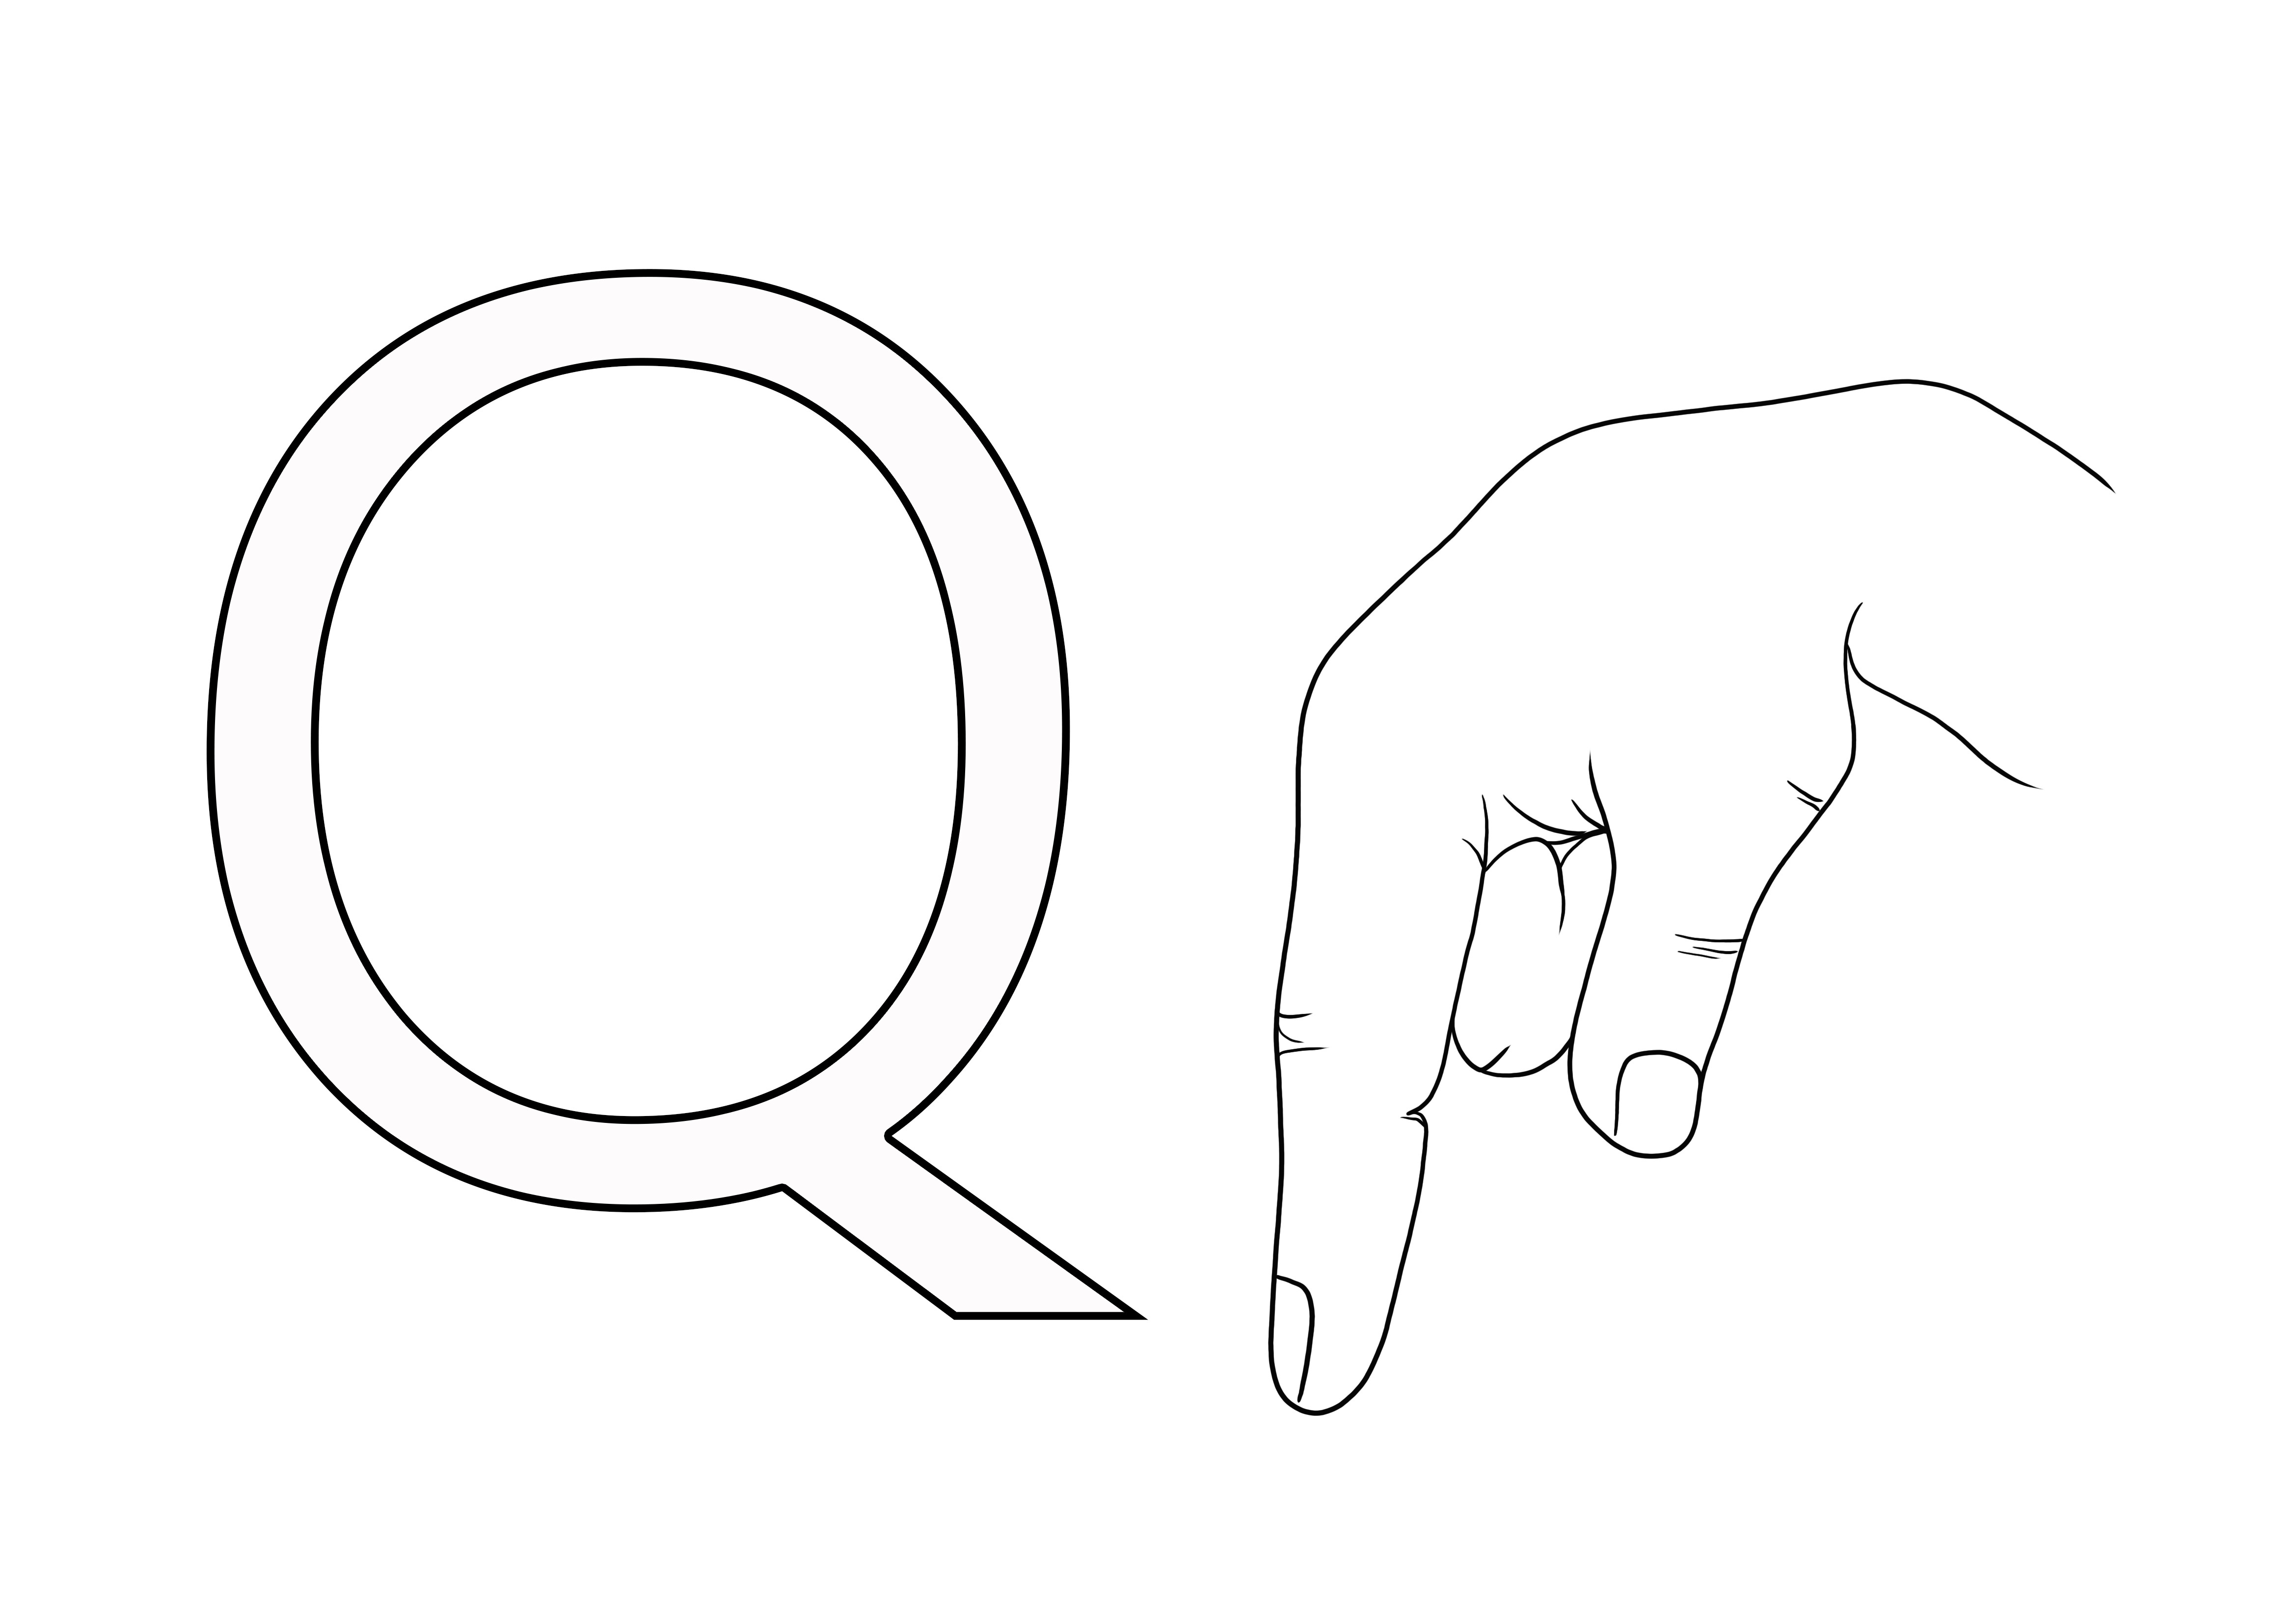 Litera Q języka migowego ASL jest bezpłatna do wydrukowania i pokolorowania, aby dzieci mogły łatwo nauczyć się ASL